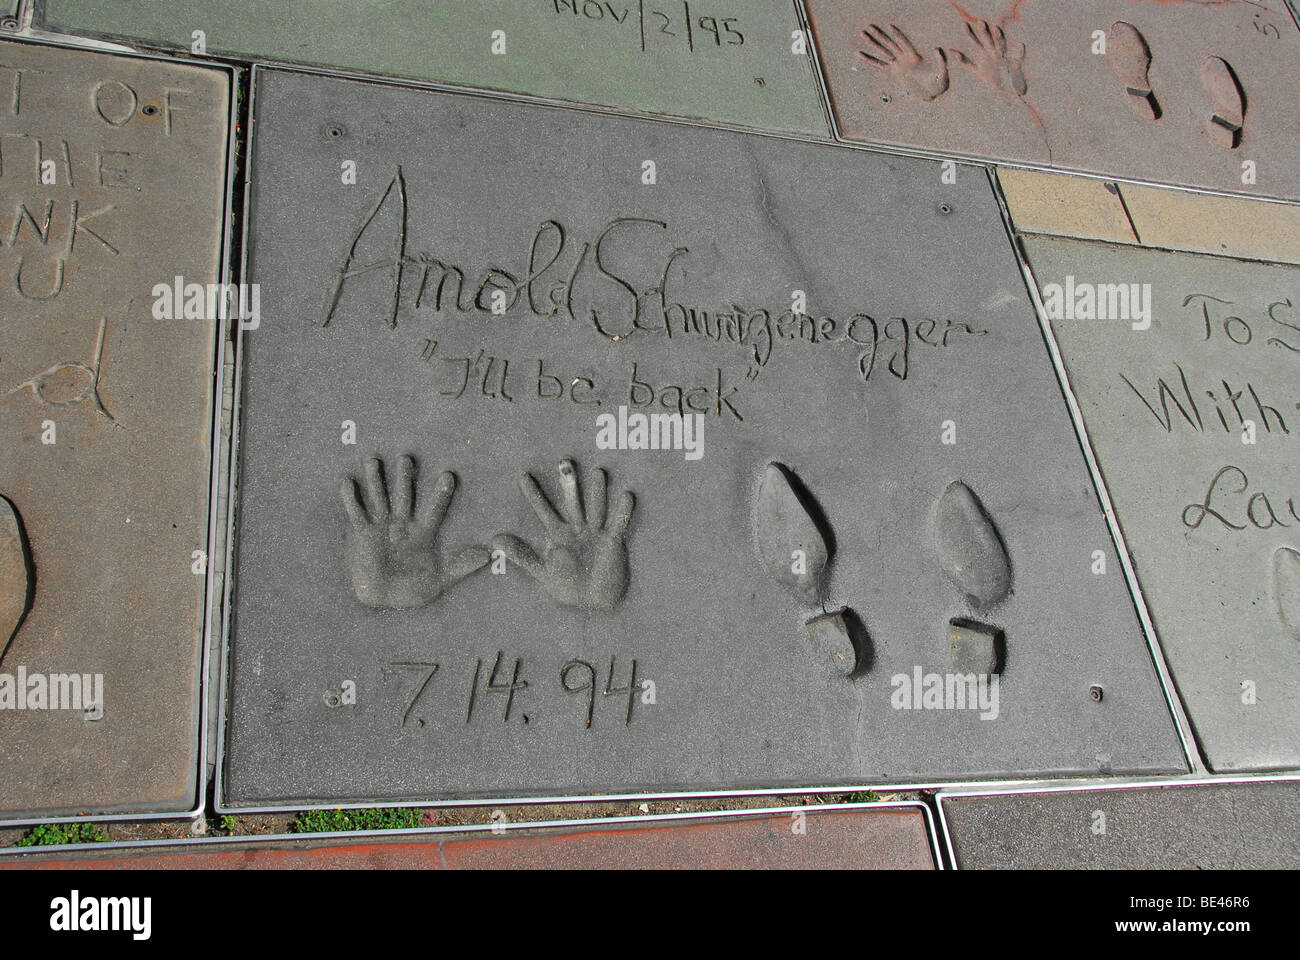 Mano- y huellas de Arnold Schwarzenegger en frente del Grauman's Chinese Theatre, Los Angeles, California, Estados Unidos, América del Norte Foto de stock